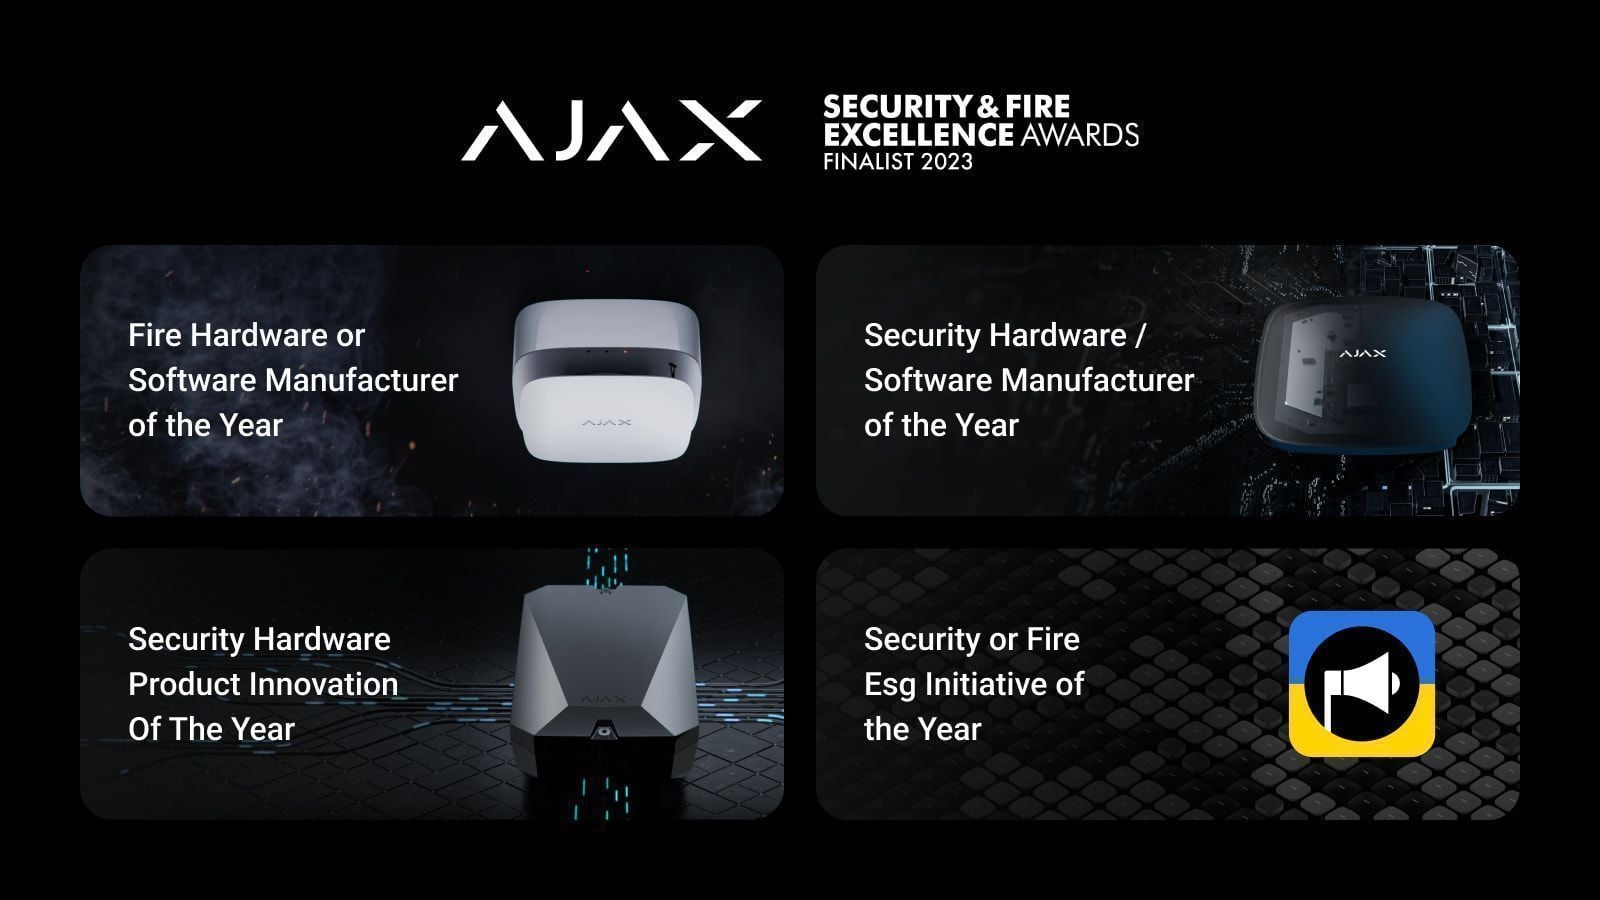 Ajax Systems визнано фіналістом премії Security & Fire Excellence Awards 2023 у 4 категоріях